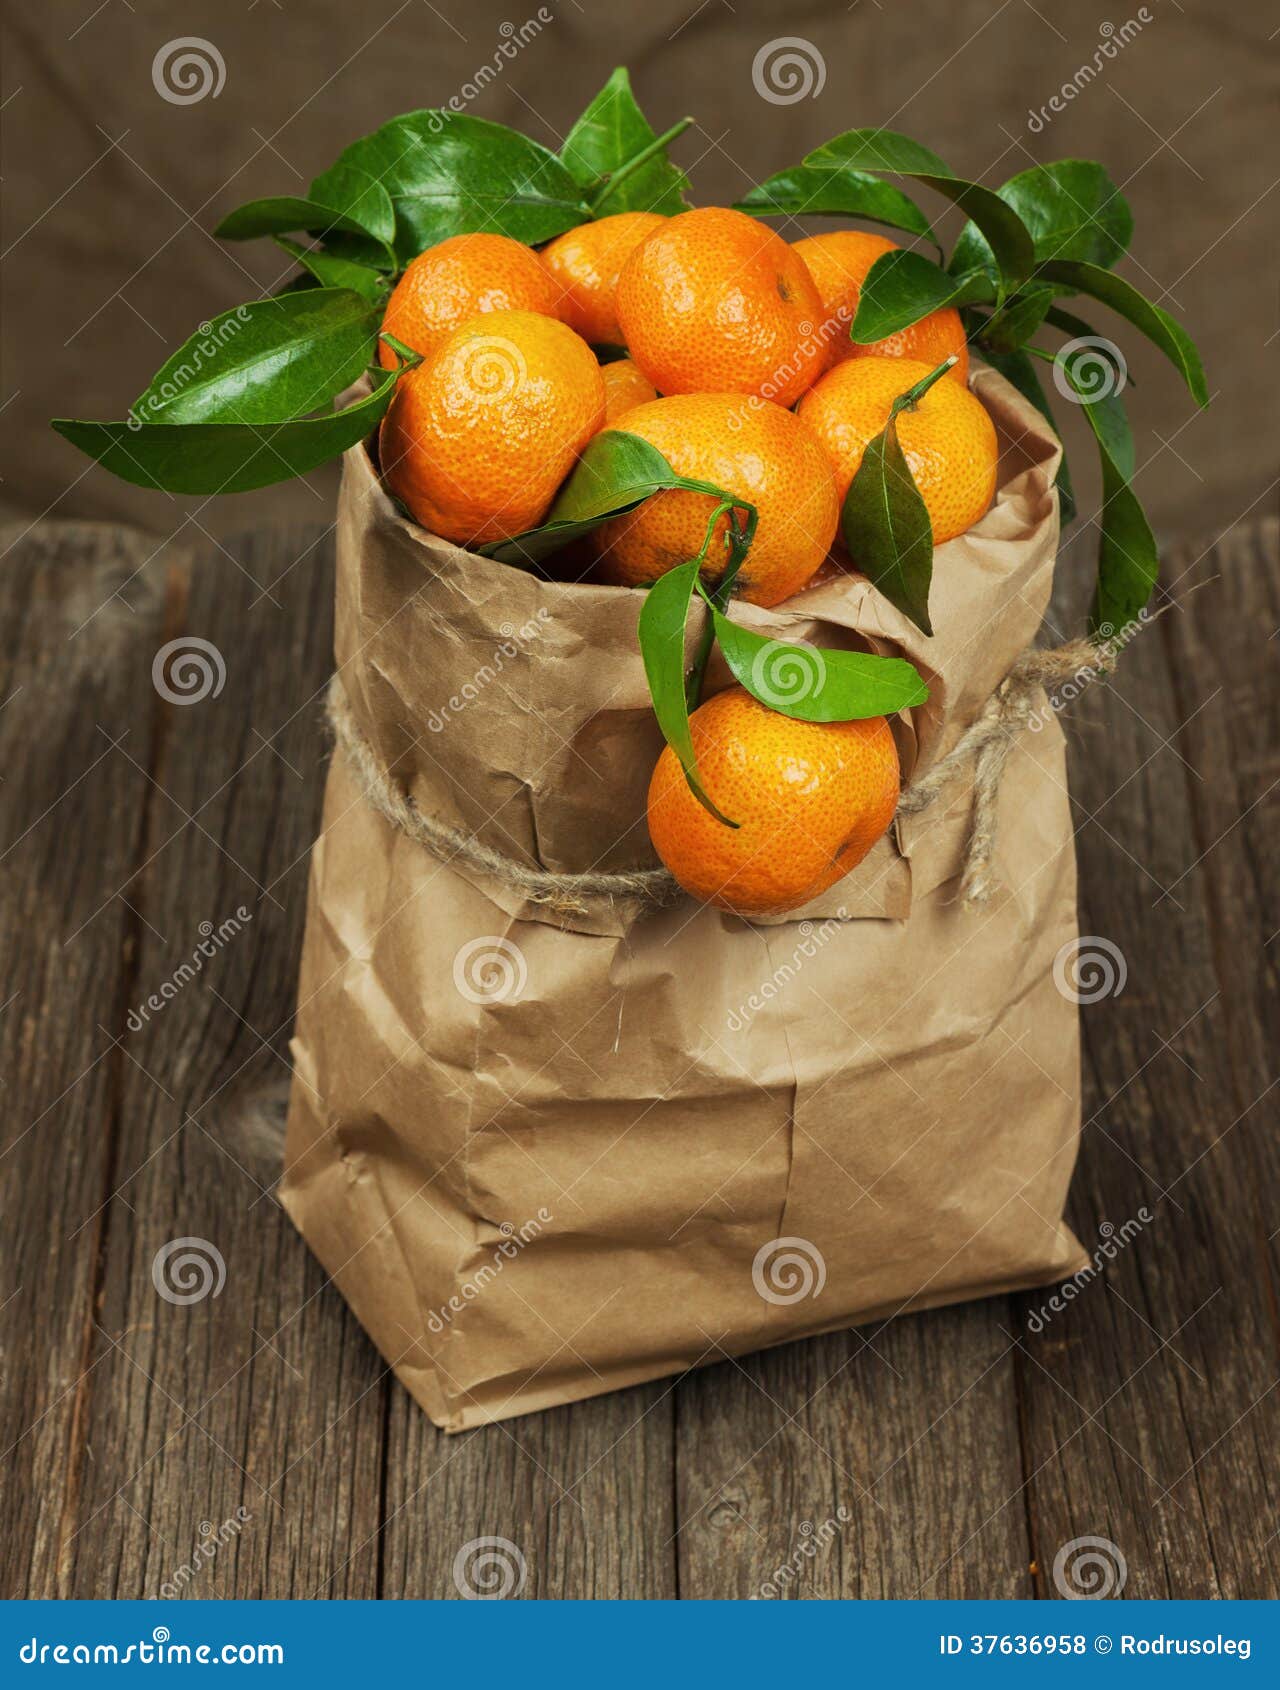 В пакете лежала мандарина. Апельсины в пакете. Мешок мандаринов. Мандарины в пакете. Пакет мандаринов.